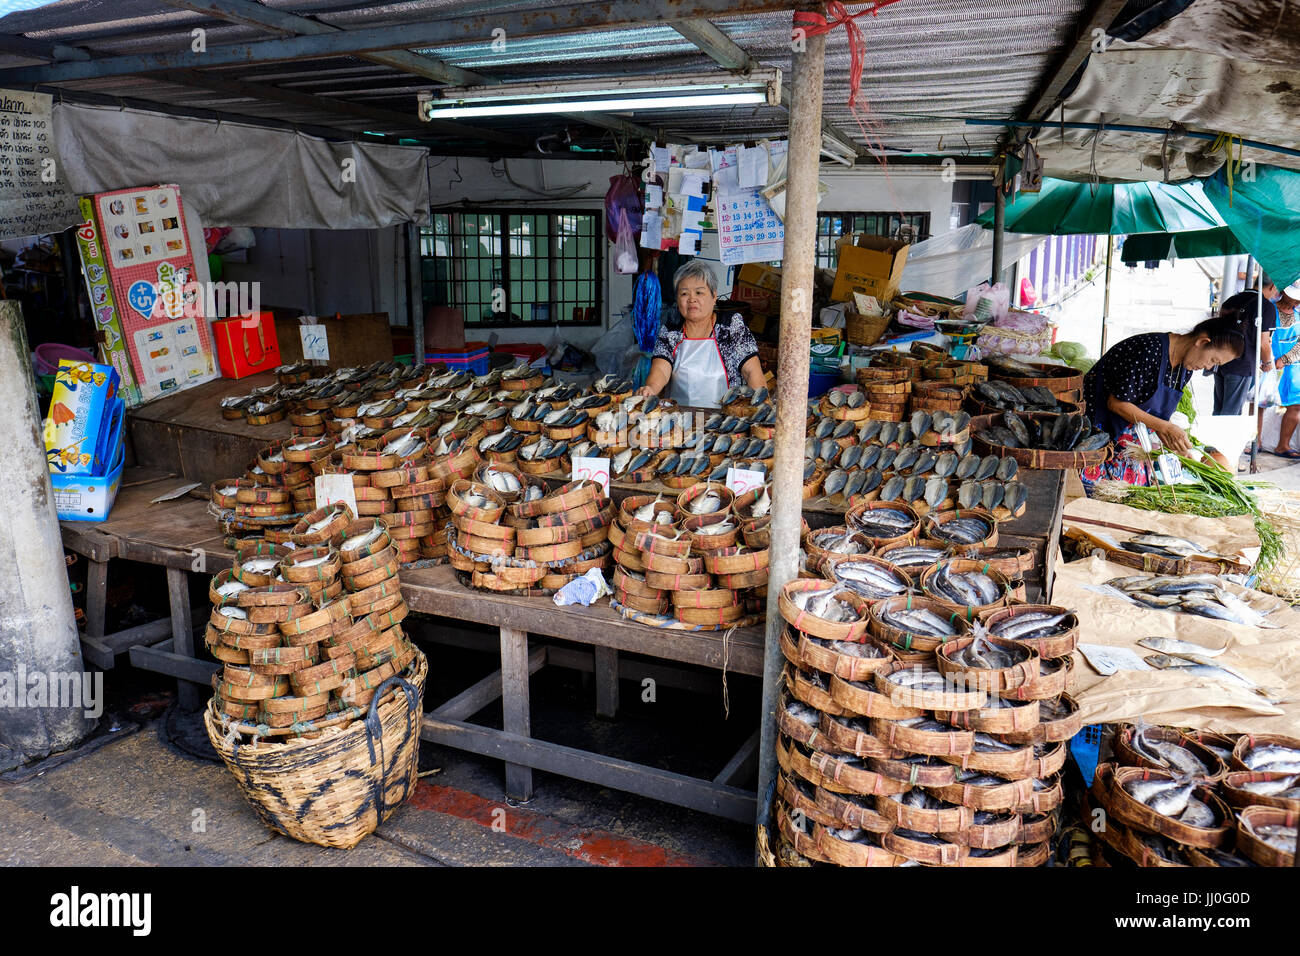 A stall selling mackerel fish at Thewet Market, Phra Nakhon District, Bangkok Thailand. Stock Photo